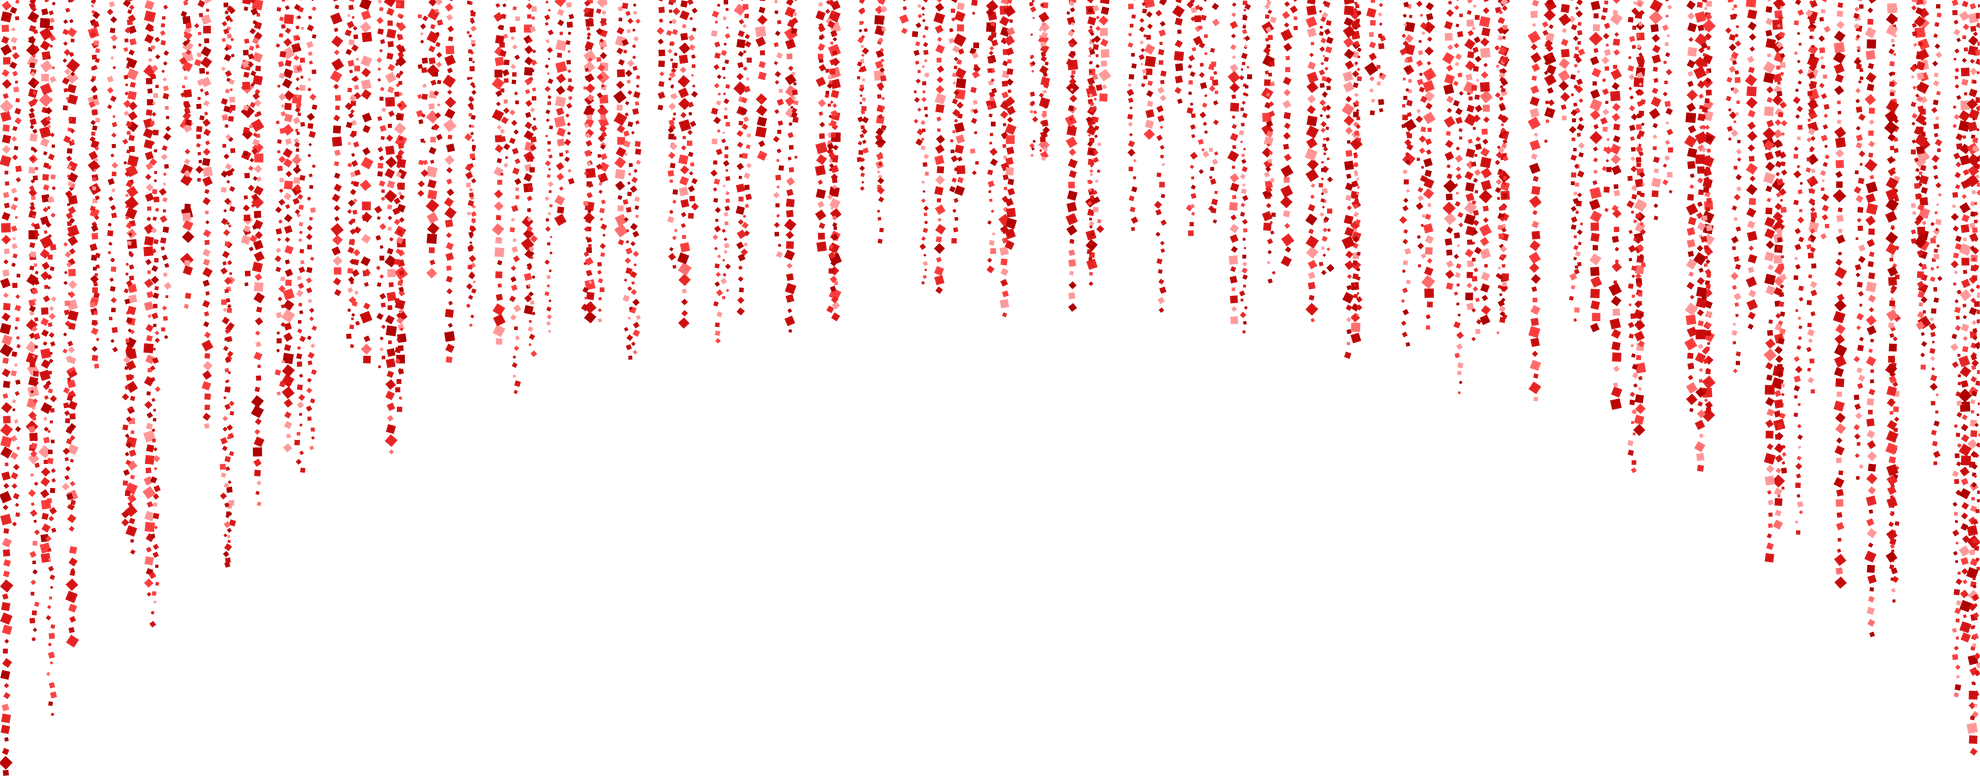 Red arc decoration glitter garland